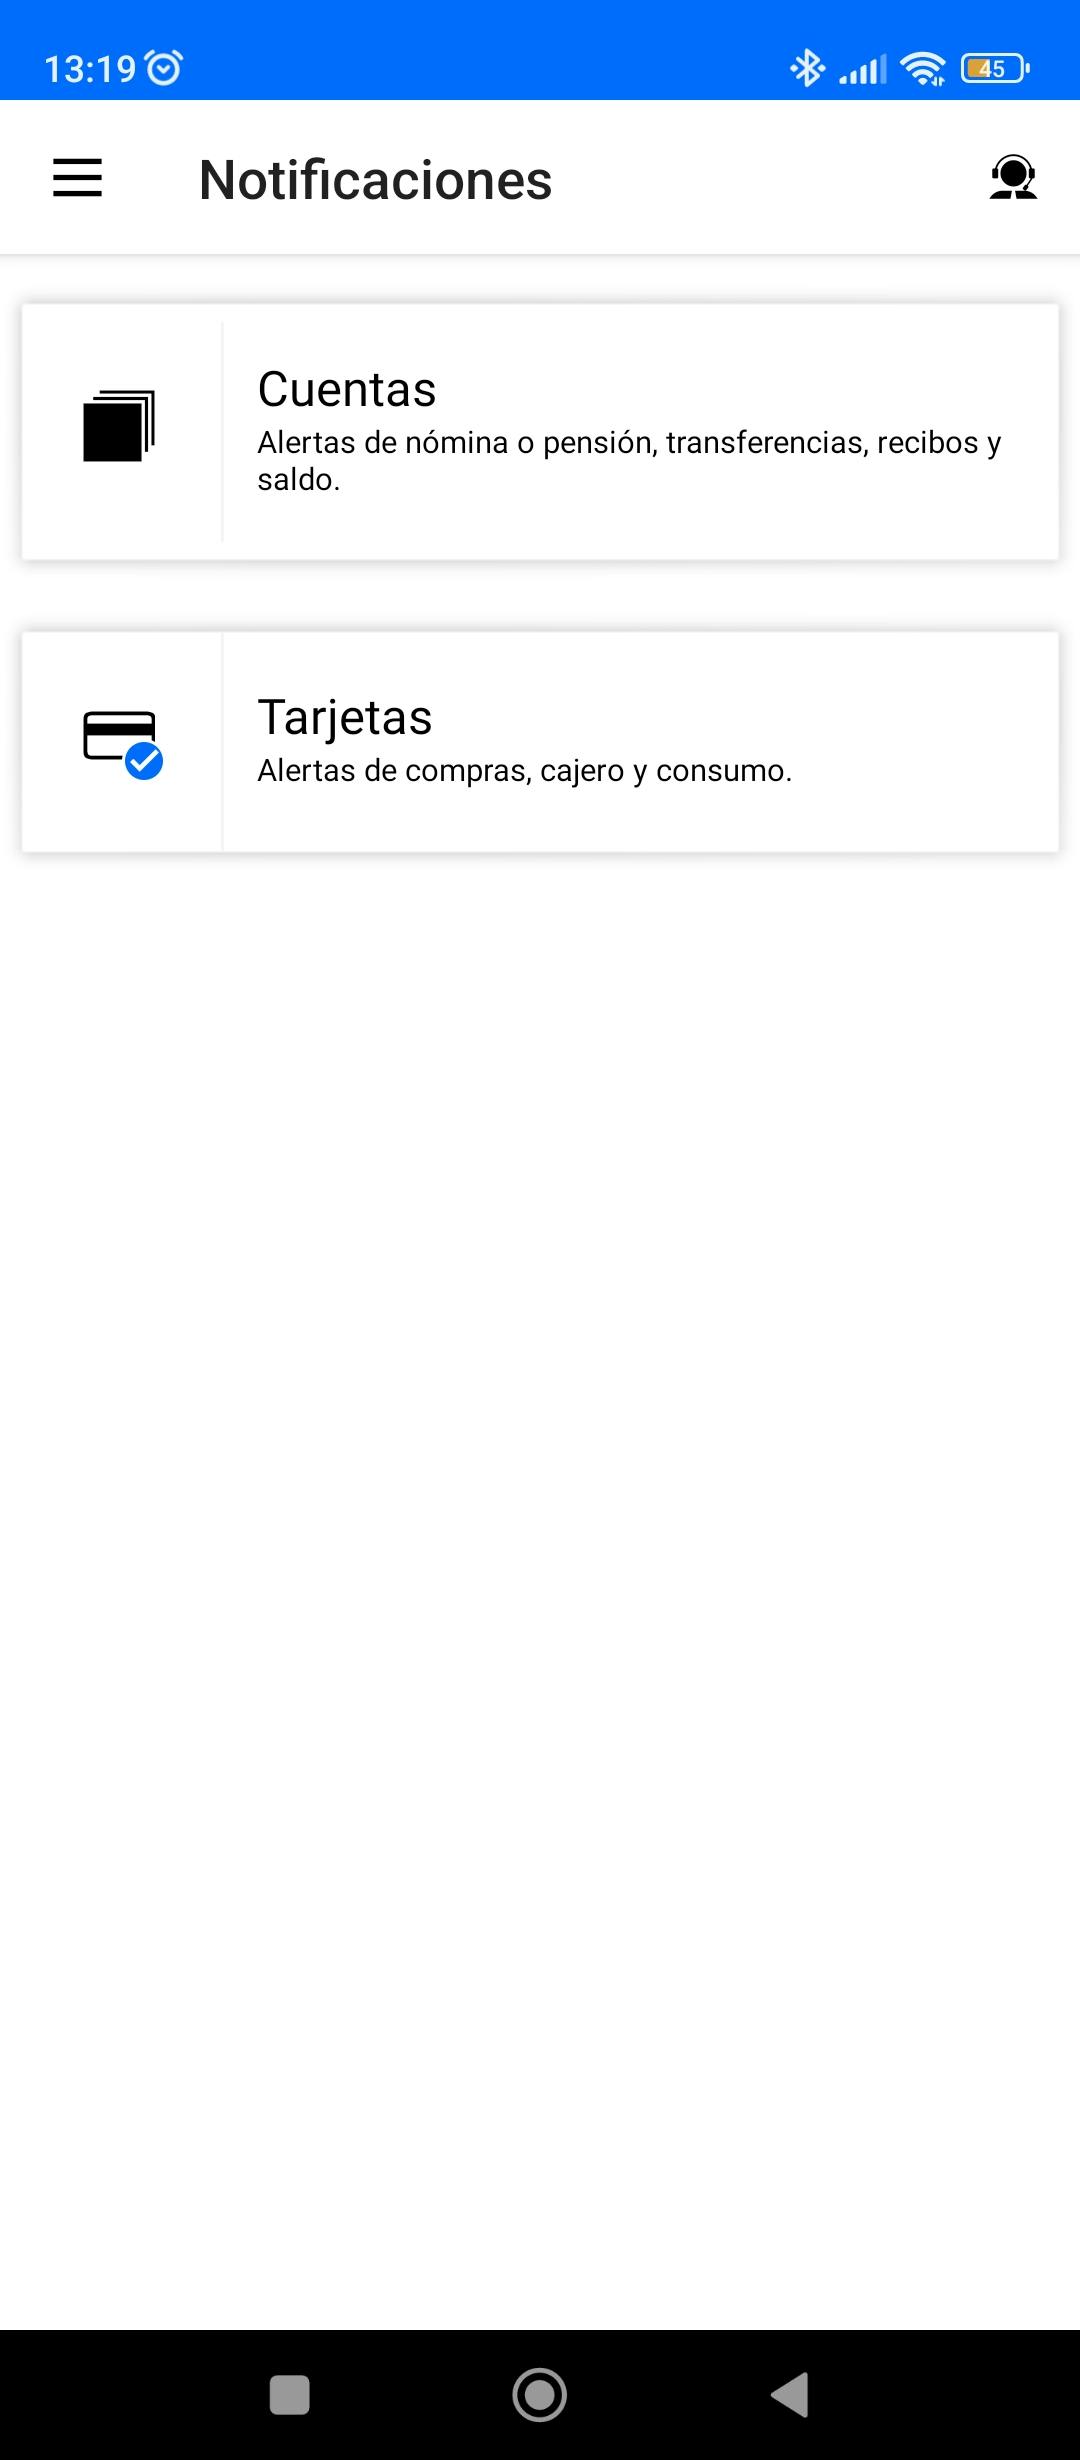 Notificaciones app Banco Sabadell para gestionar que alertas quieres de cuentas o de las tarjetas